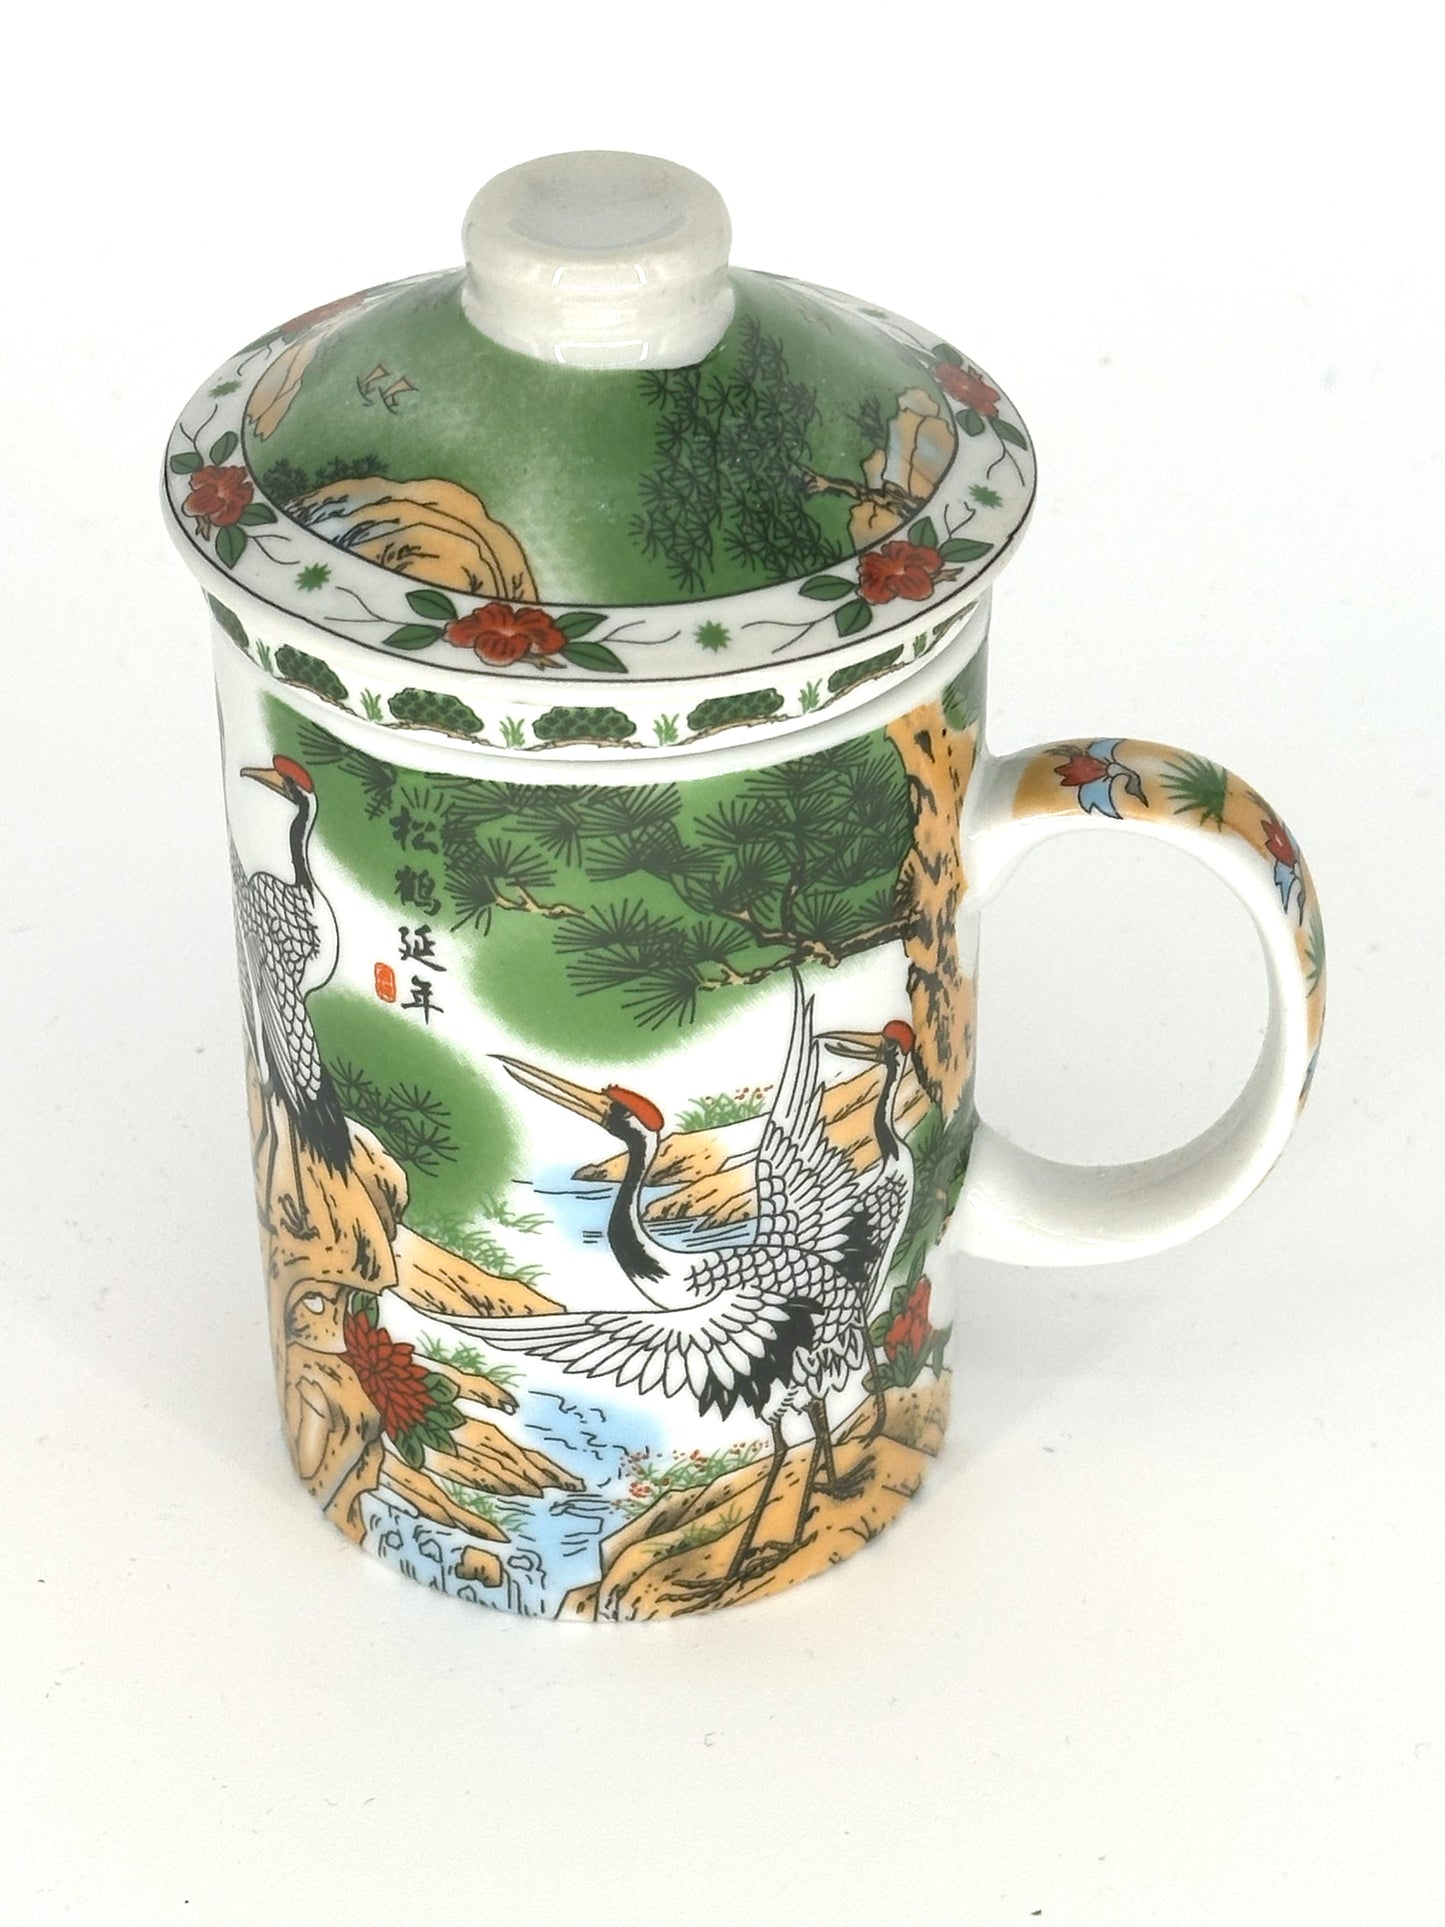 Cranes - Beautiful Art Ceramic Tea Mug